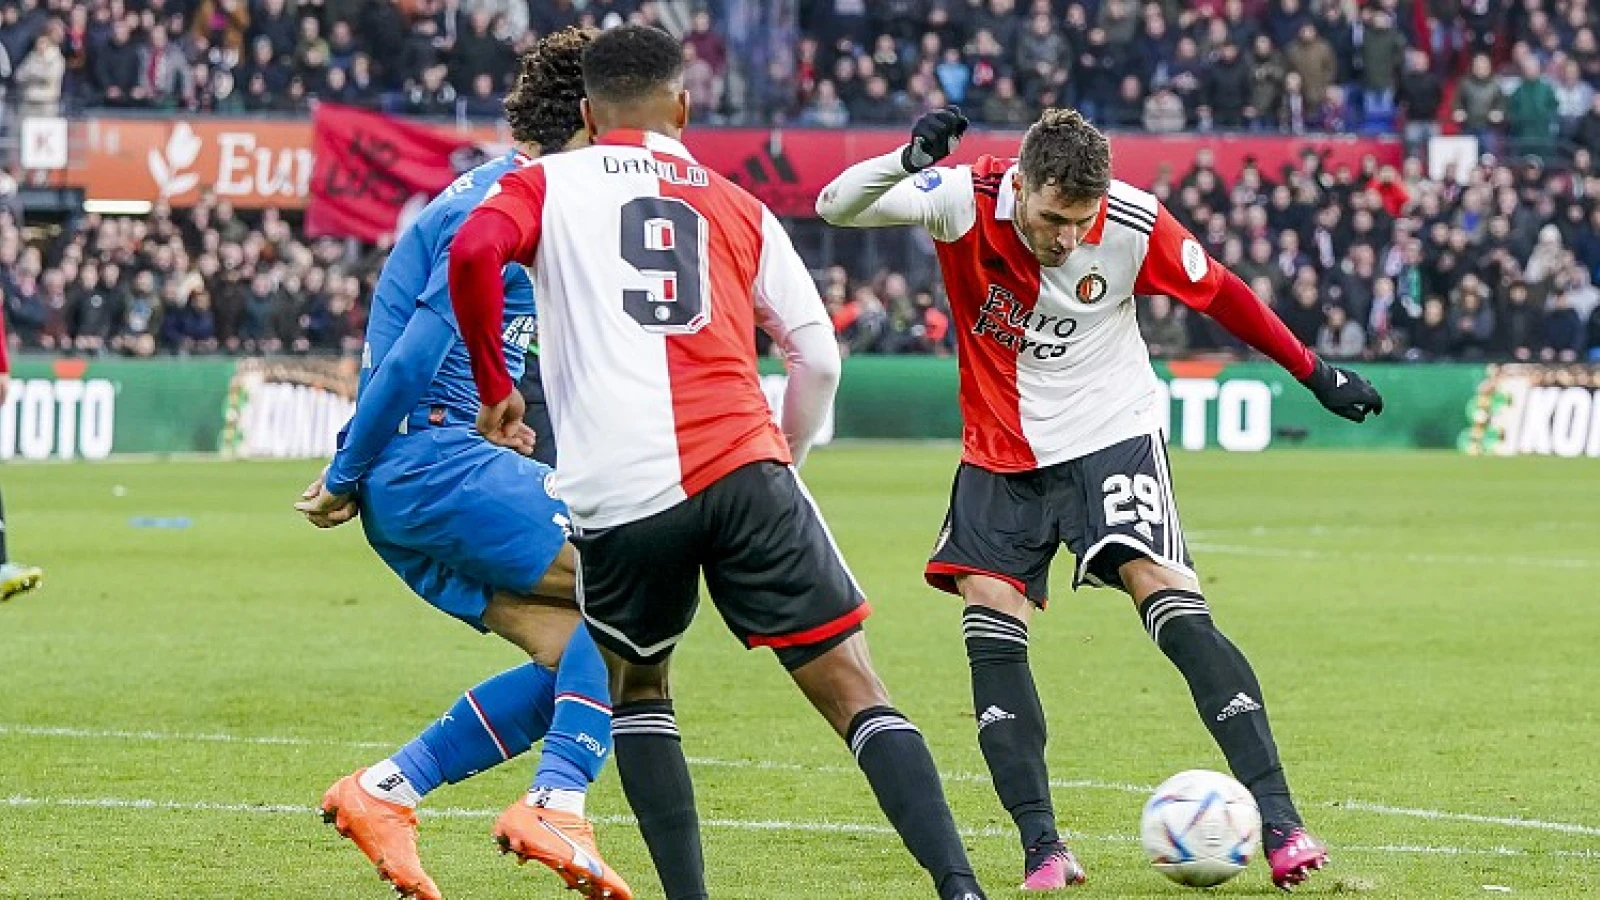 De kranten | 'Feyenoord slaat weer aanval af'